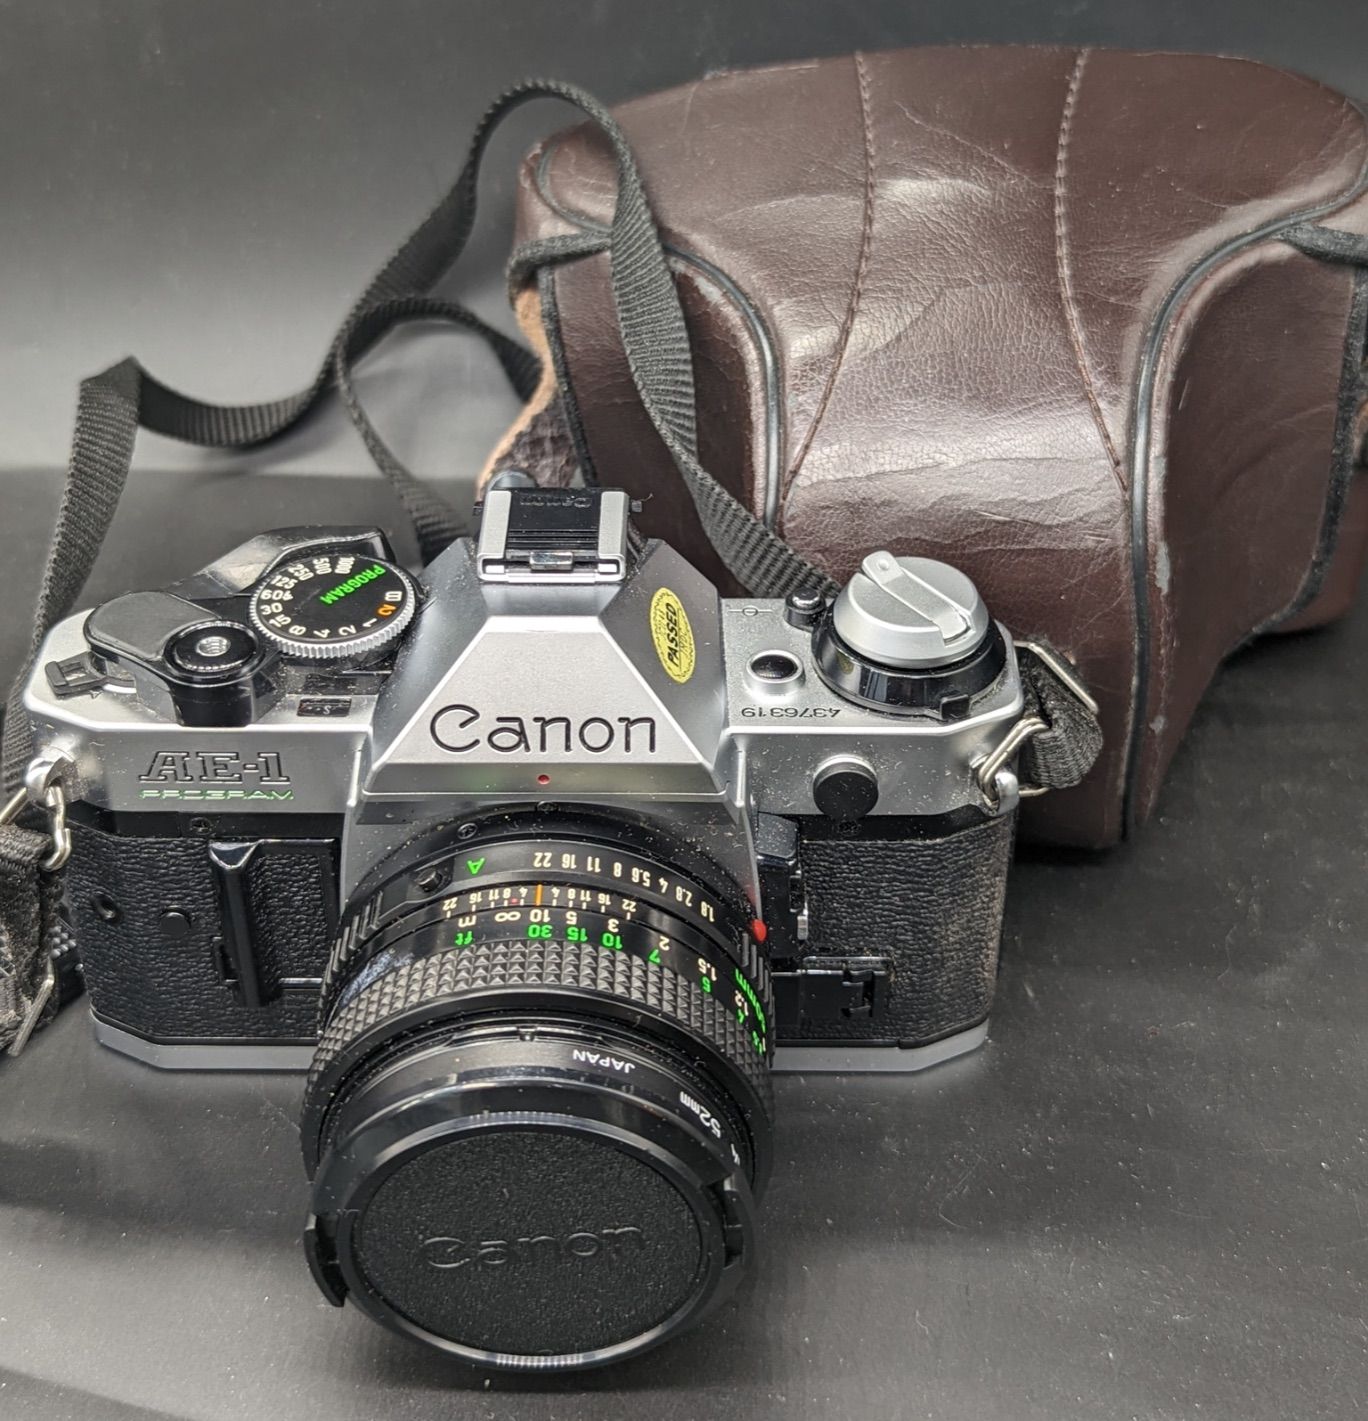 CANON Una fotocamera Canon AE-1, obiettivo 50 mm